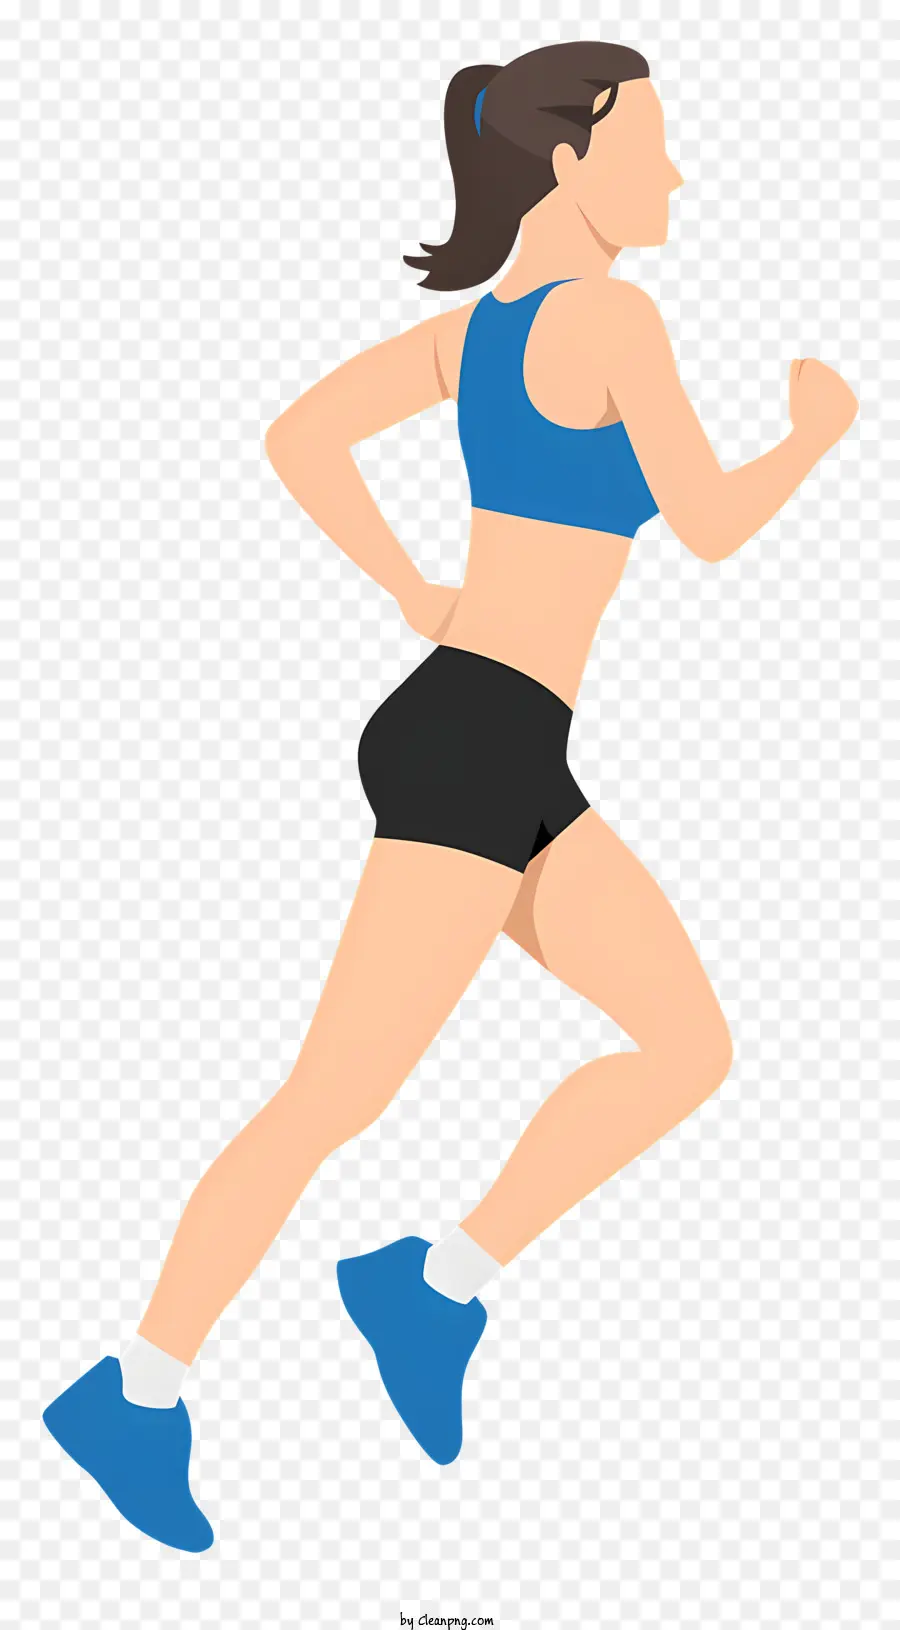 Người phụ nữ màu xanh trên cùng màu đen máy chạy bộ chạy bộ - Người phụ nữ mặc áo xanh và quần short chạy trên máy chạy bộ